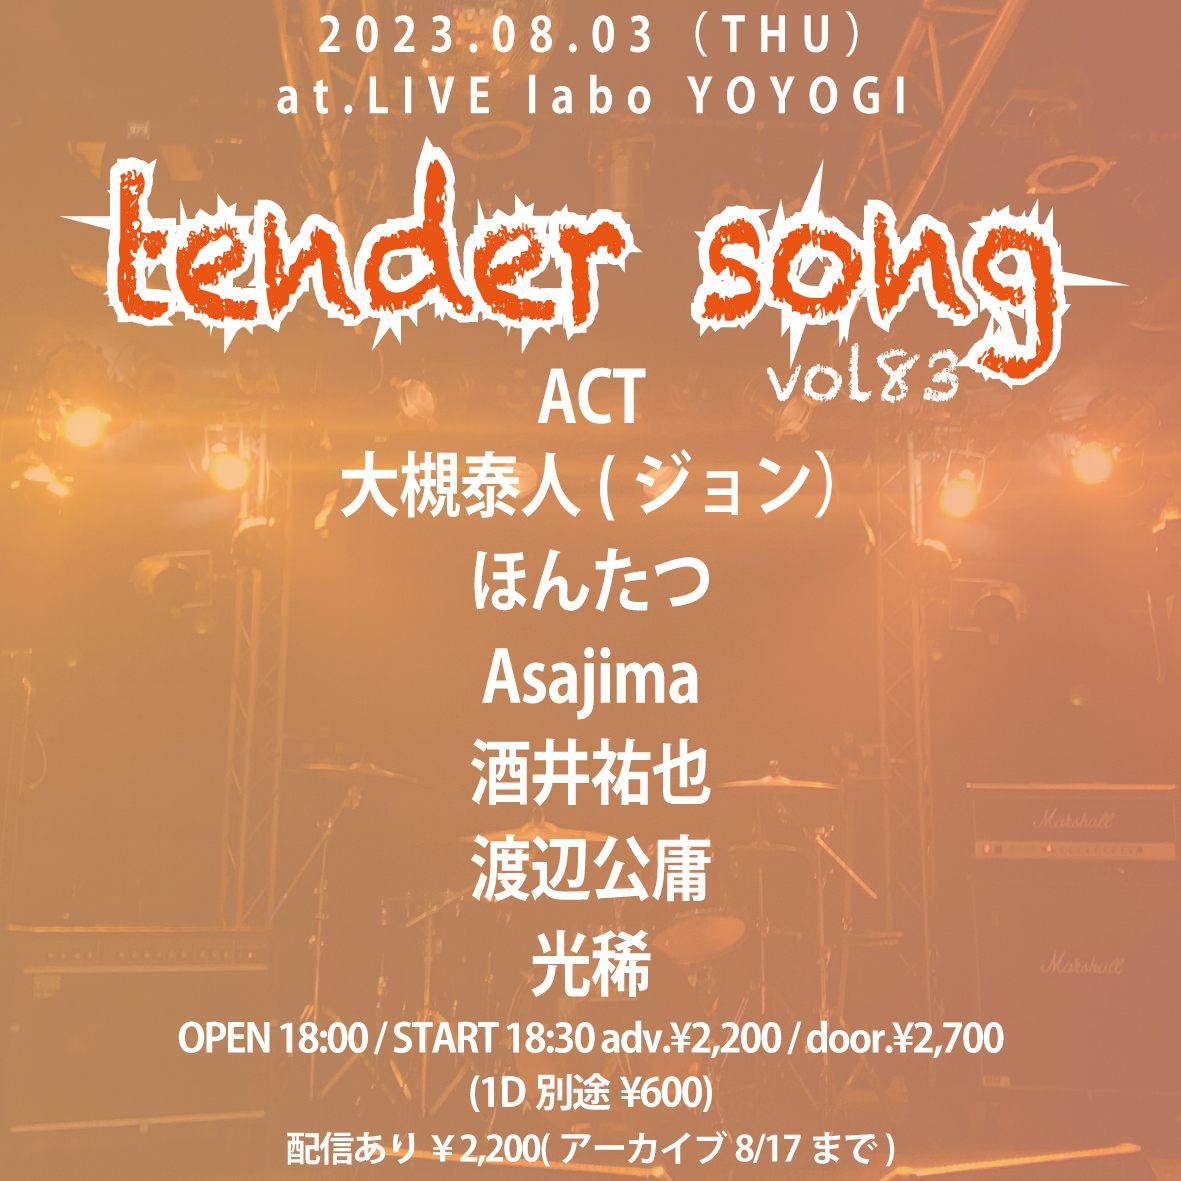 tender song vol.83